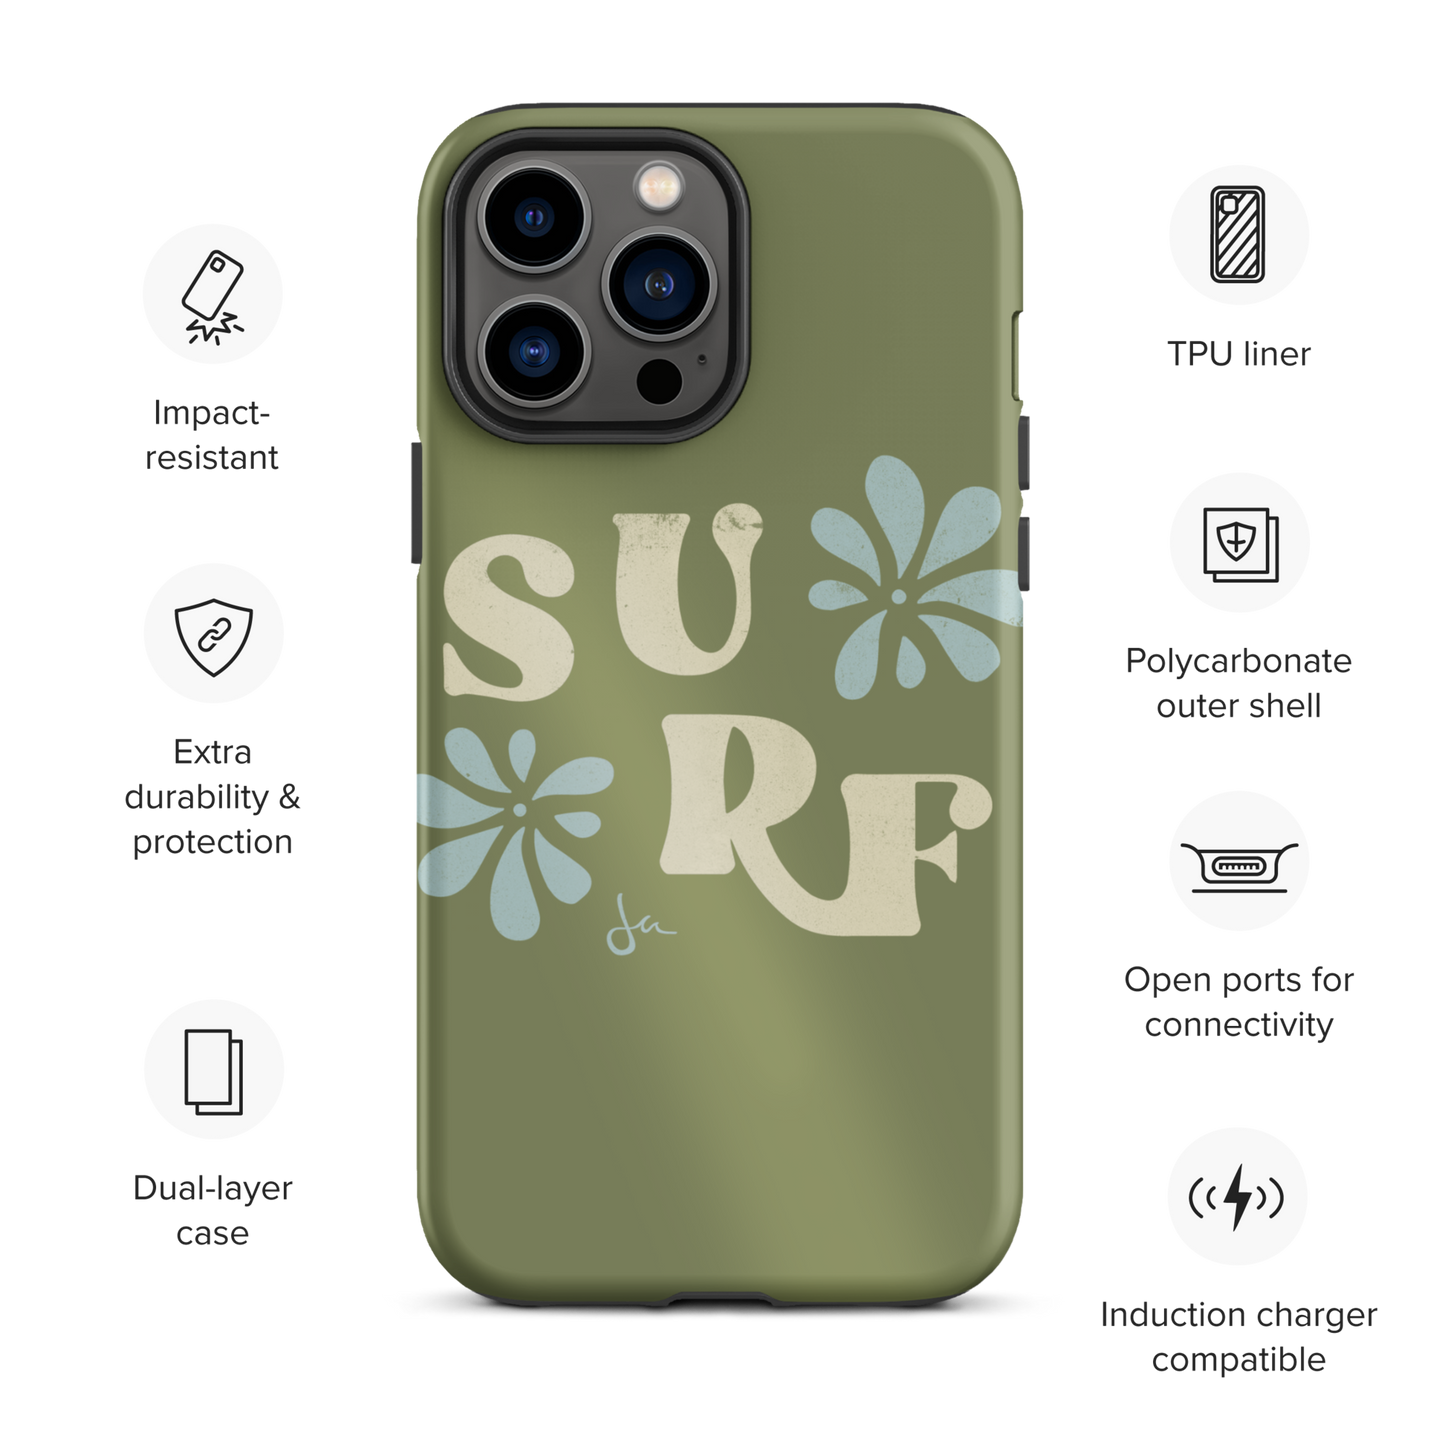 Tough iPhone Case | Surf